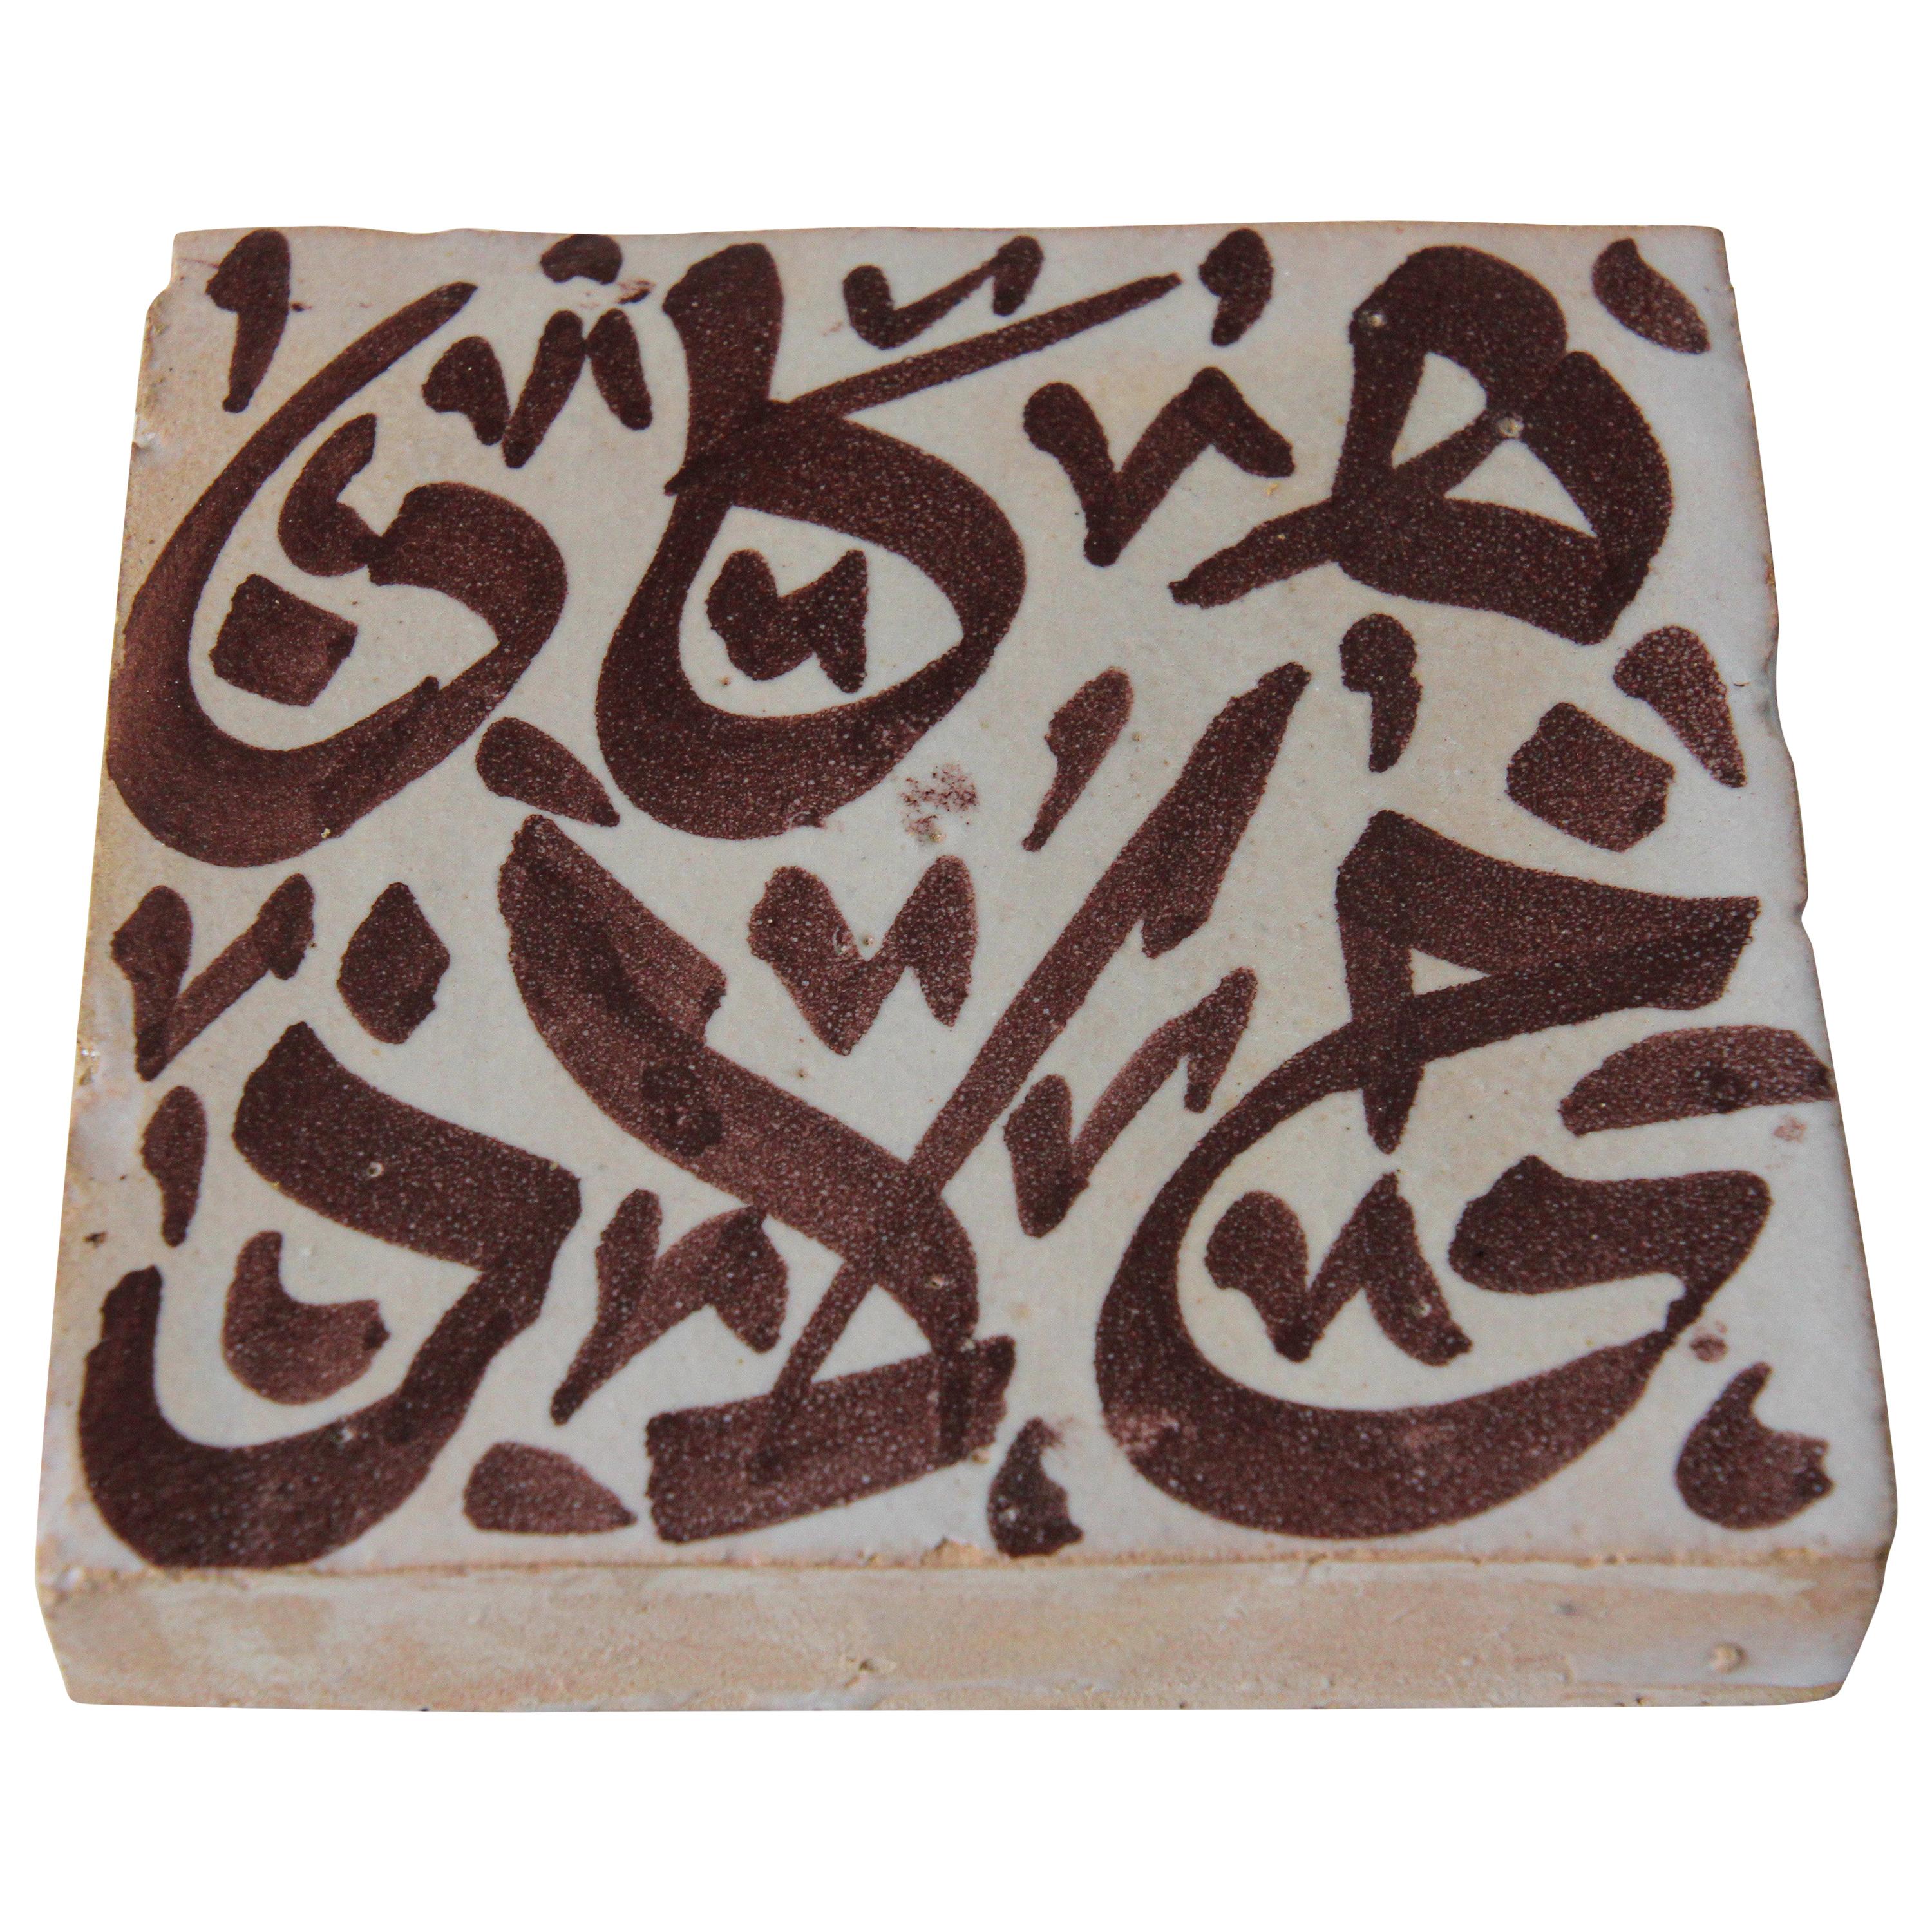 Moorish Tile with Arabic Brown Writing